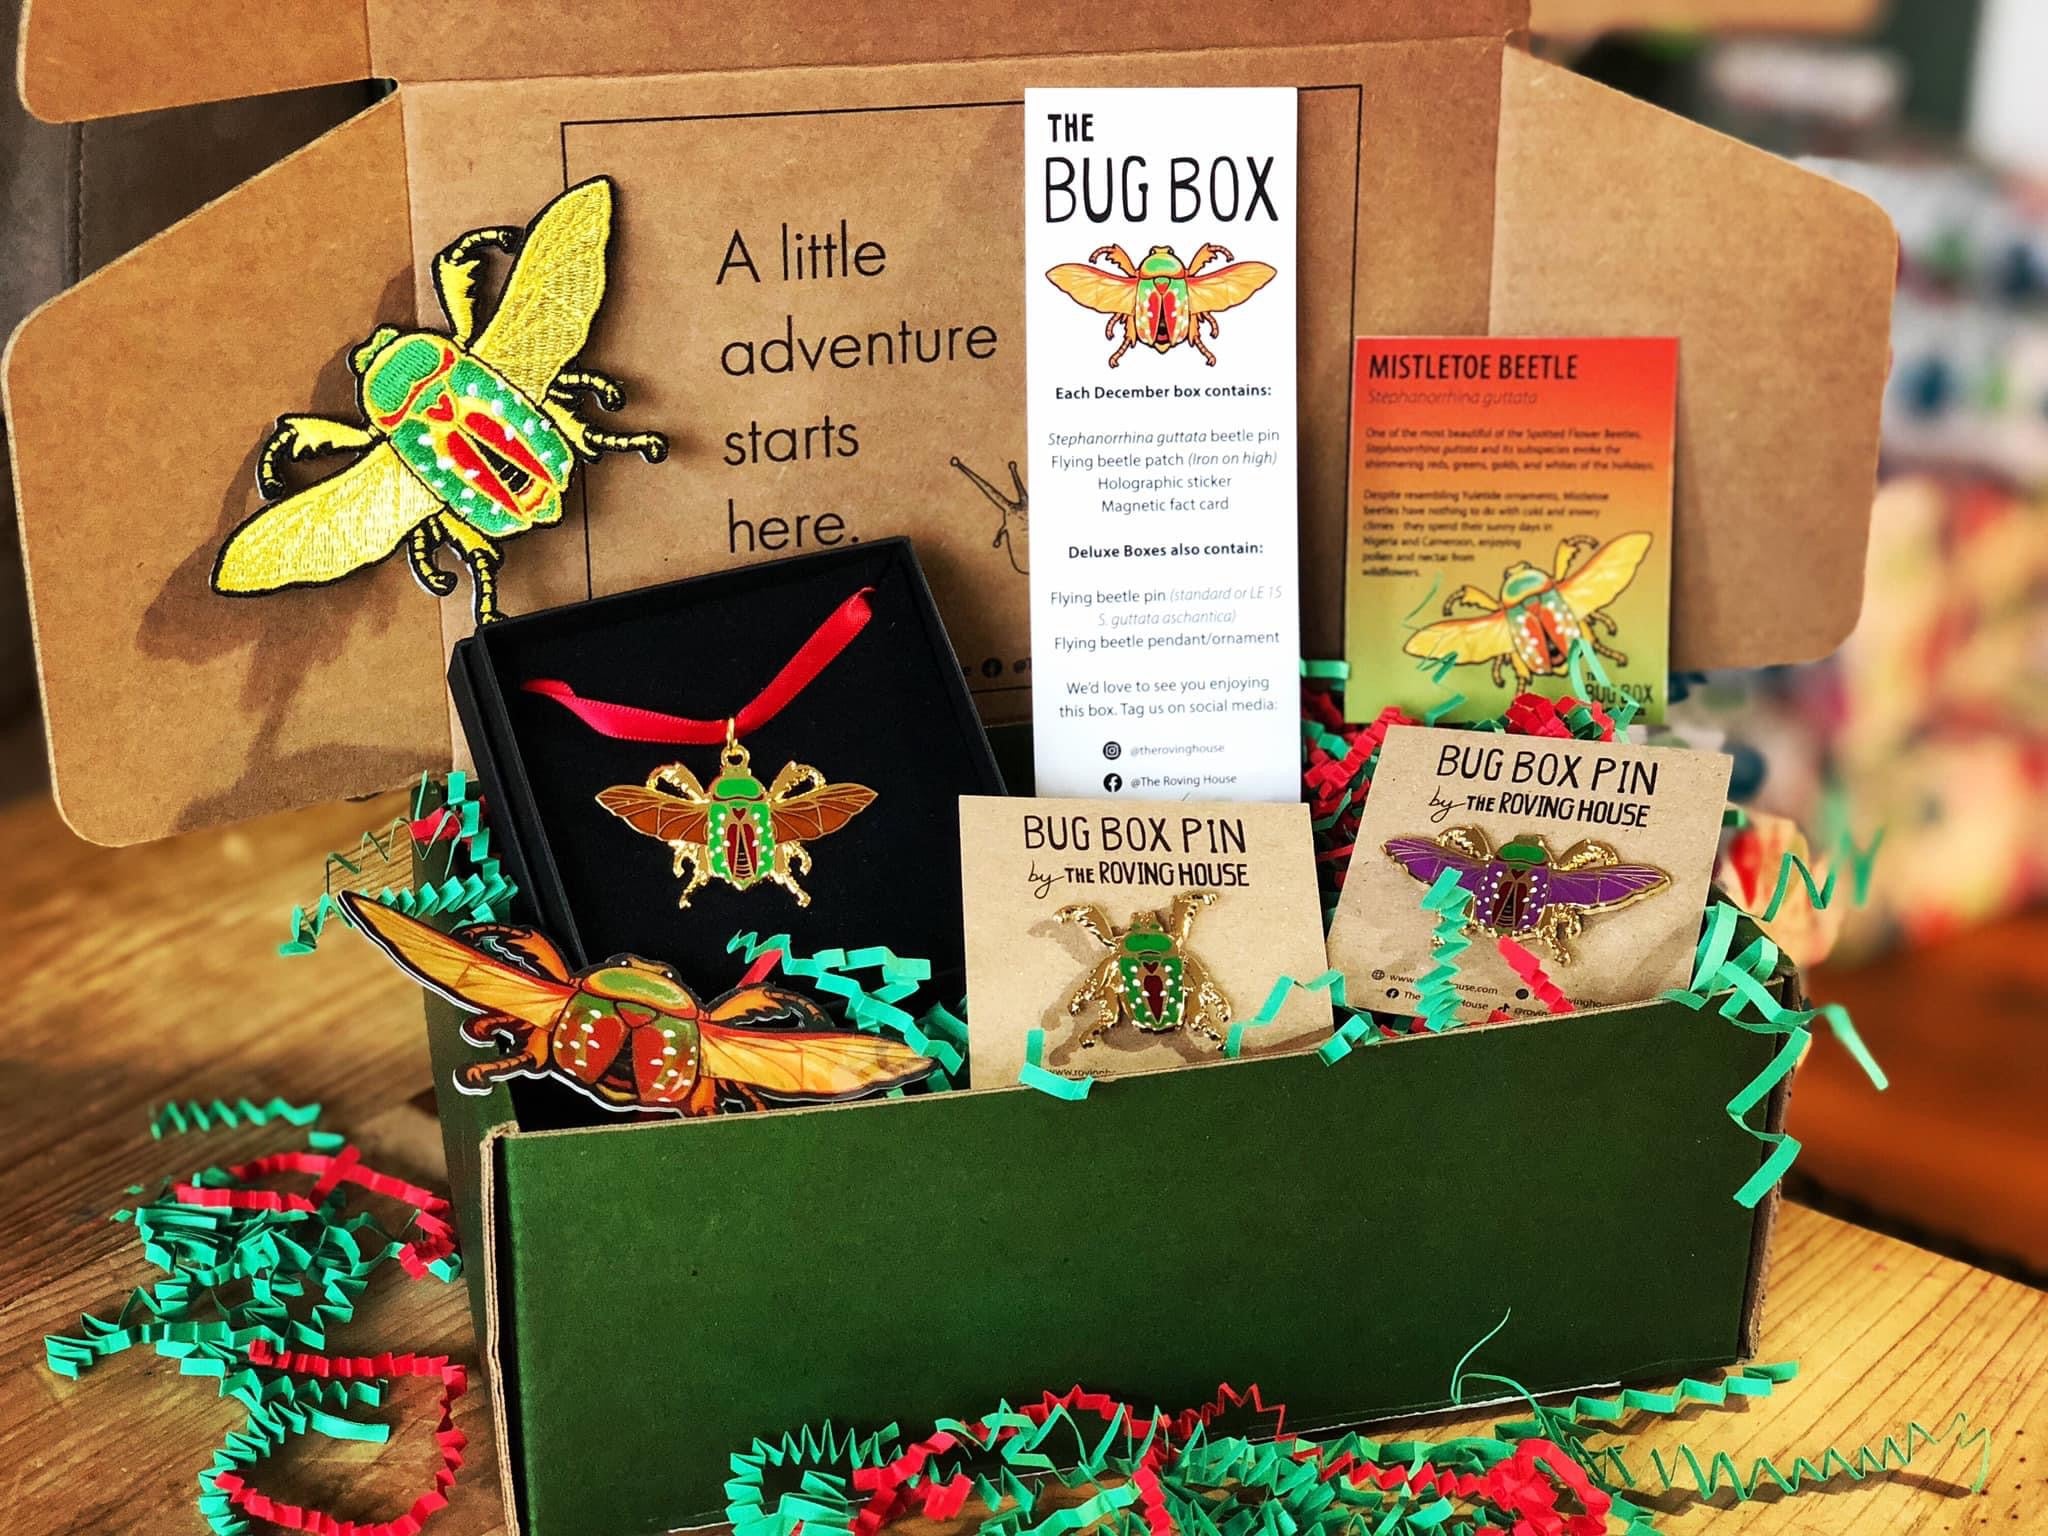 The Bug Box